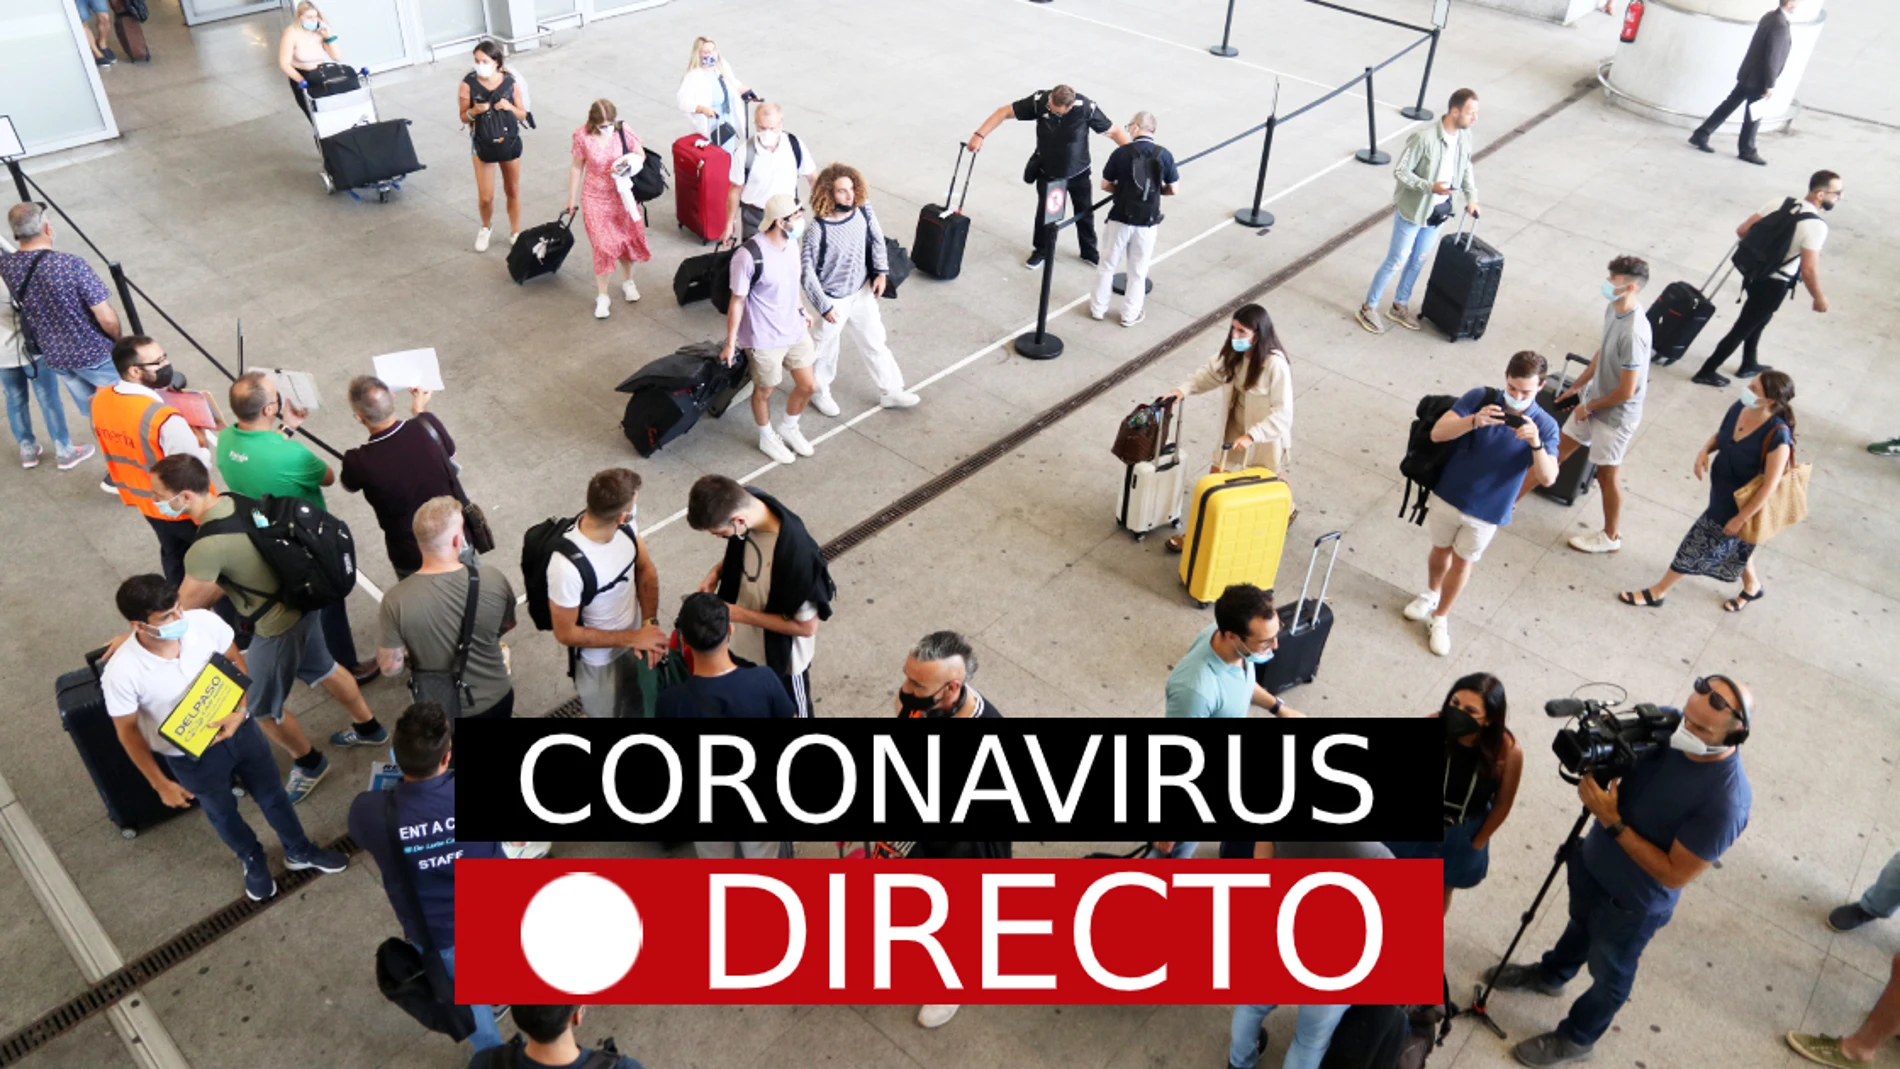 Última hora por coronavirus en España, nuevas restricciones, certificado COVID y vacuna, hoy